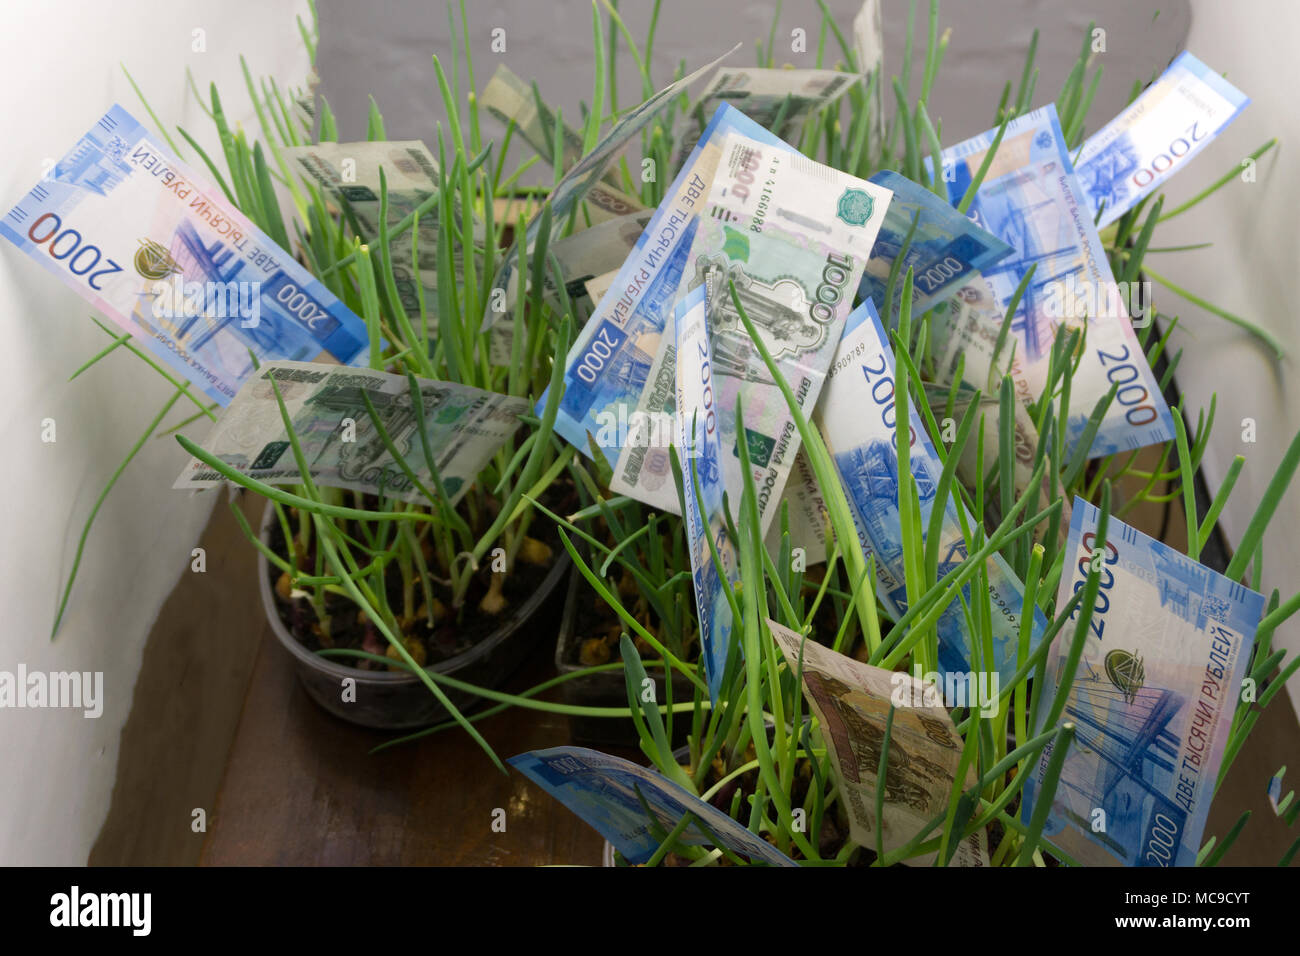 L'herbe de l'argent : rouble russe (à l'herbe verte. Appréciation de rouble russe. Concept financier Banque D'Images